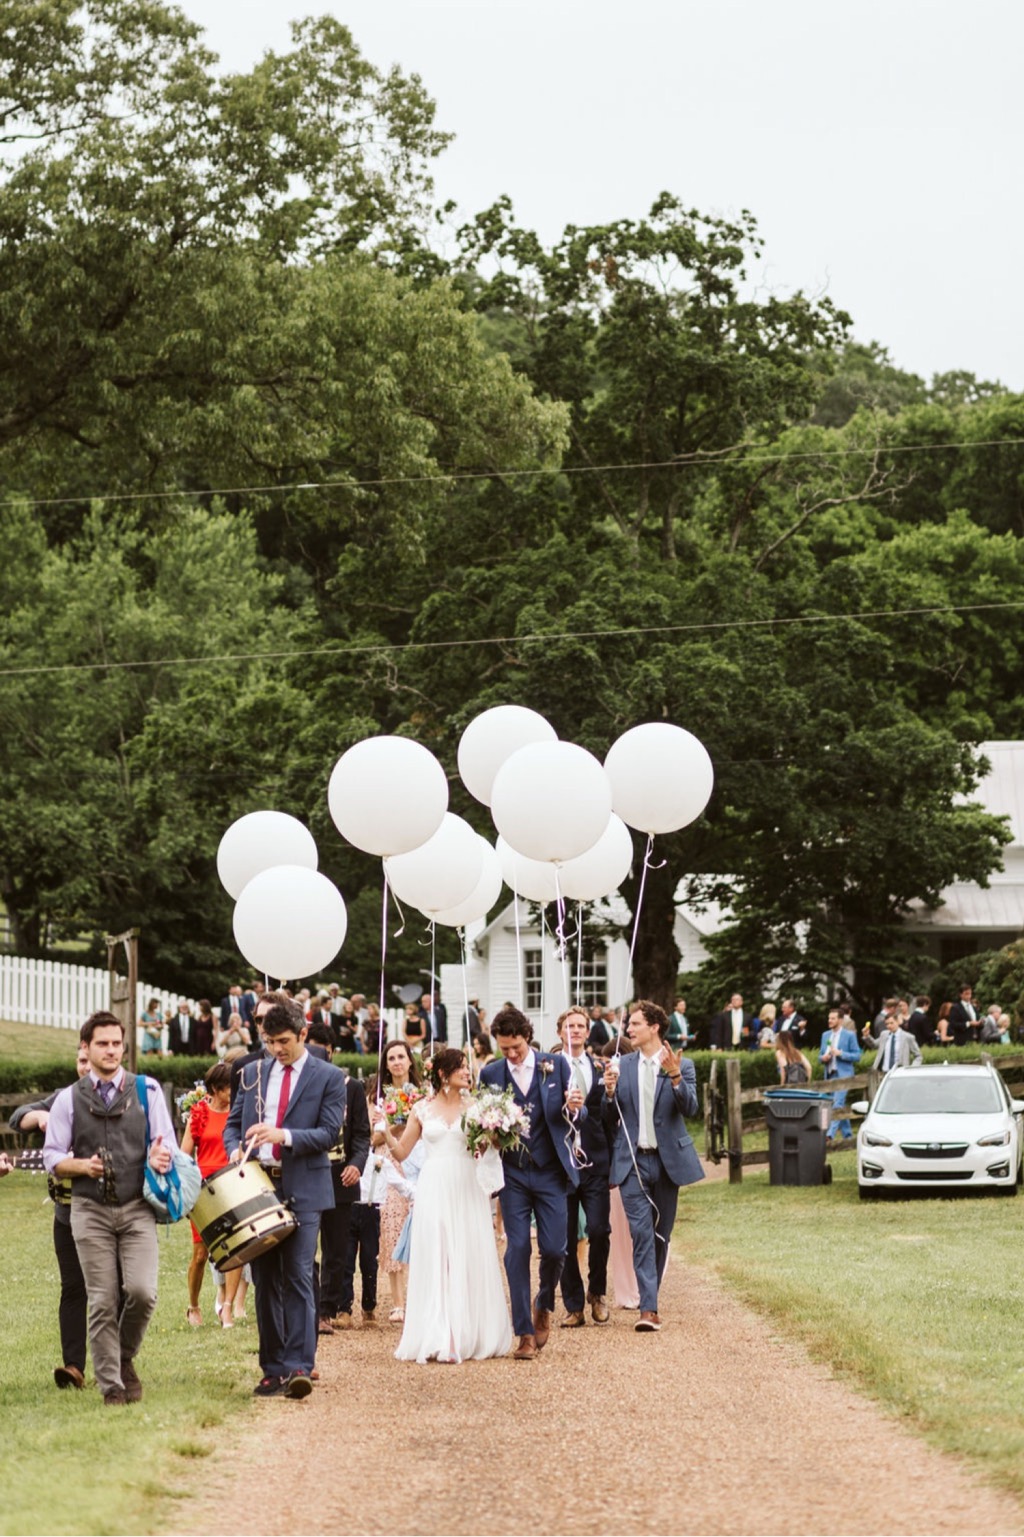 Balloon parade to wedding reception